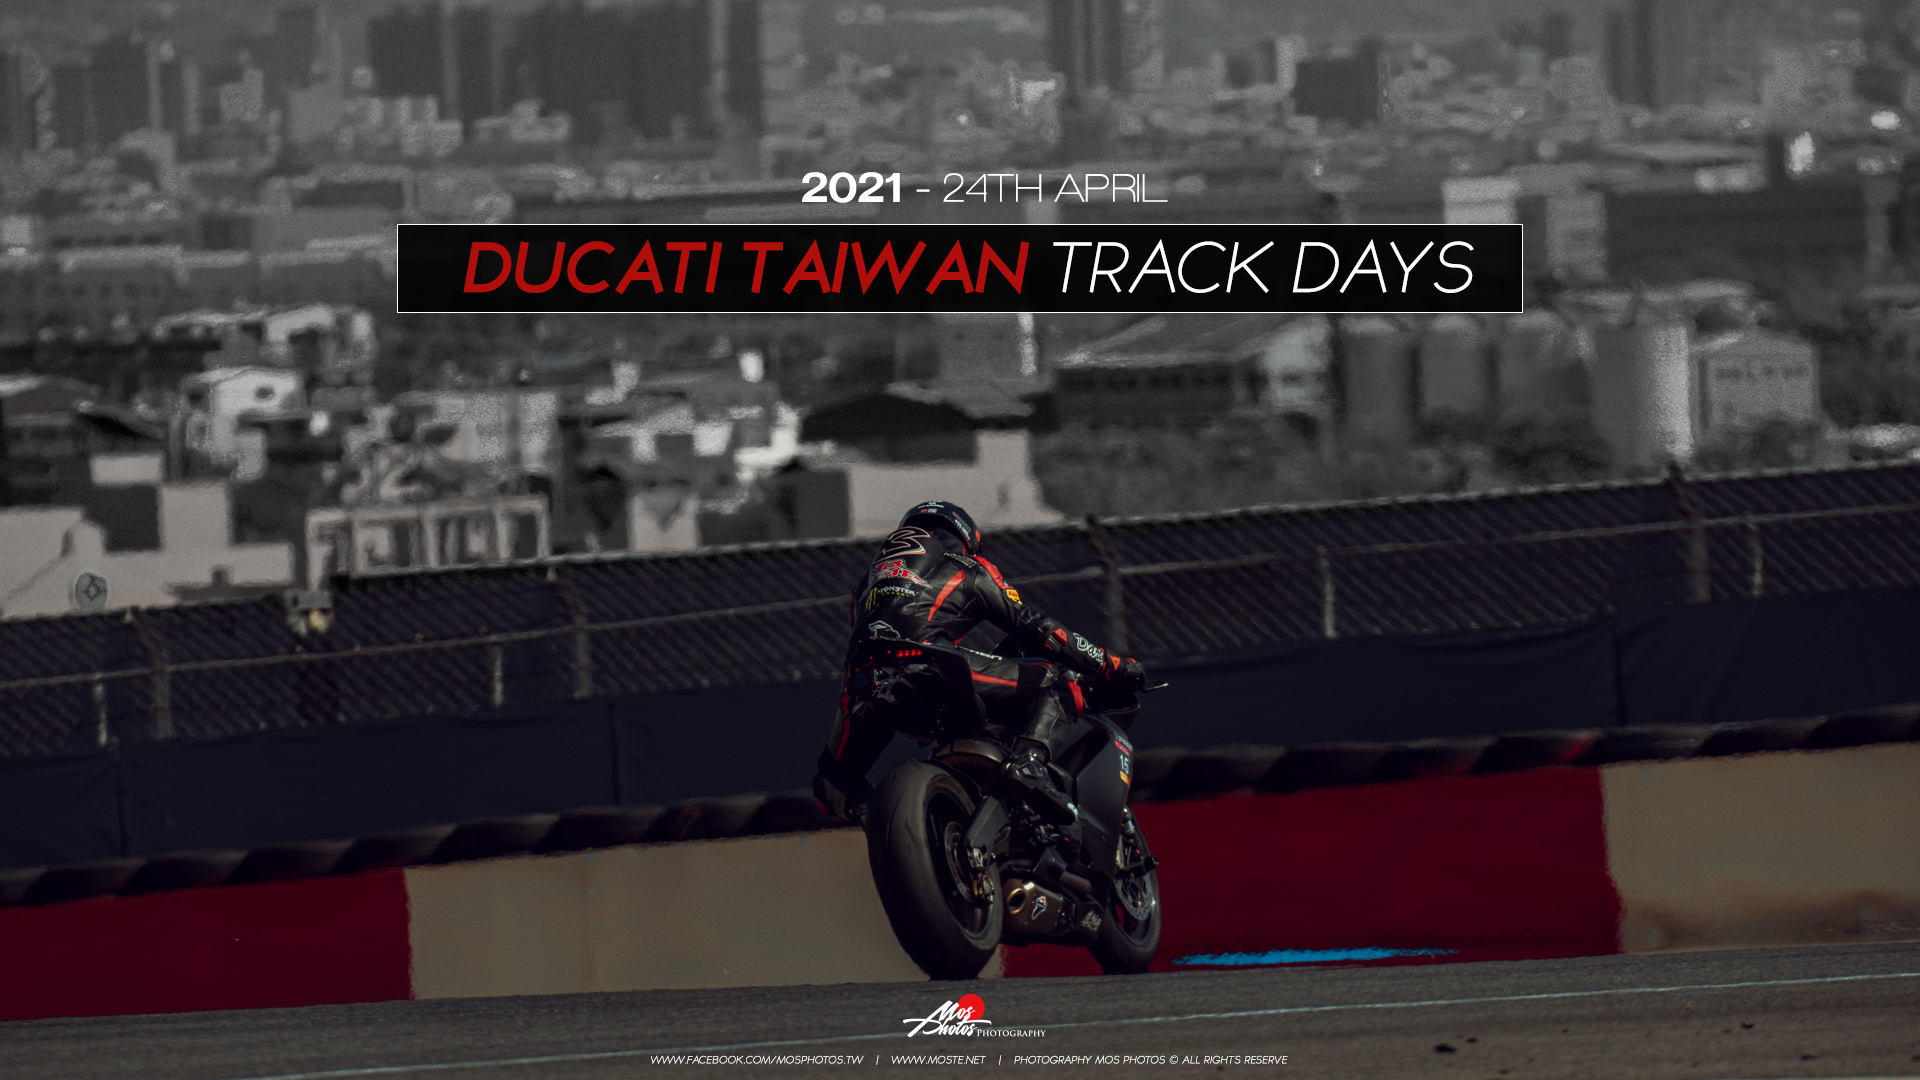 2021 DUCATI TAIWAN TRACK DAYS.